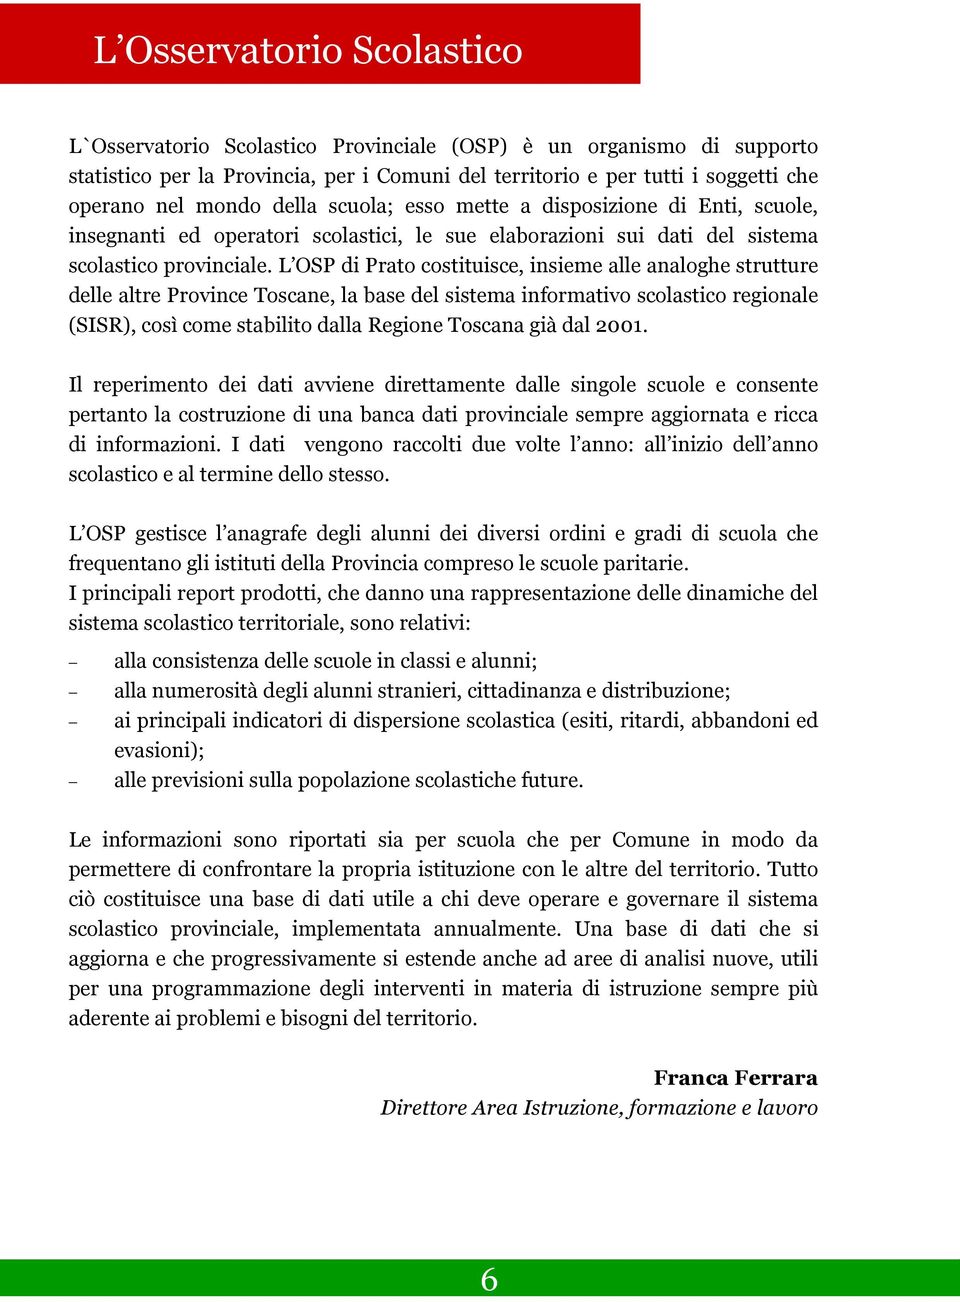 L OSP di Prato costituisce, insieme alle analoghe strutture delle altre Province Toscane, la base del sistema informativo scolastico regionale (SISR), così come stabilito dalla Regione Toscana già